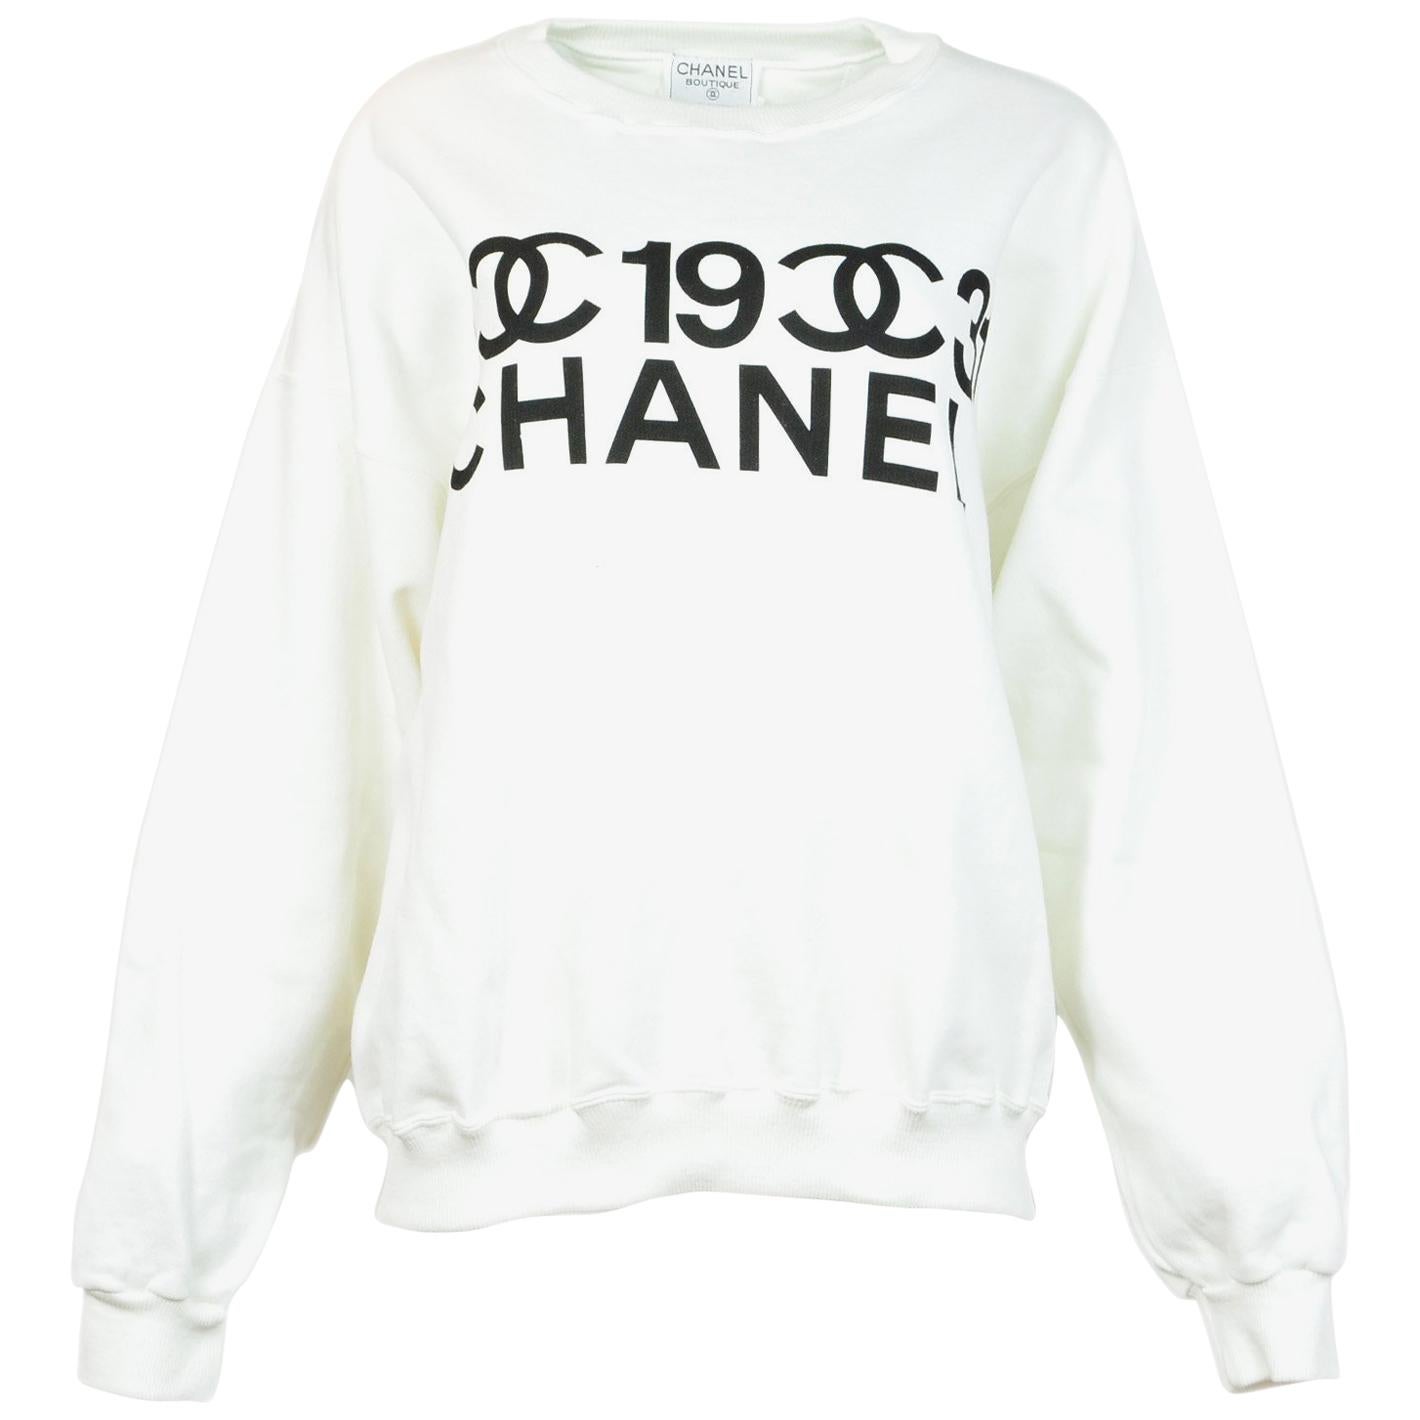 CHANEL, Tops, Chanel Sweatshirt